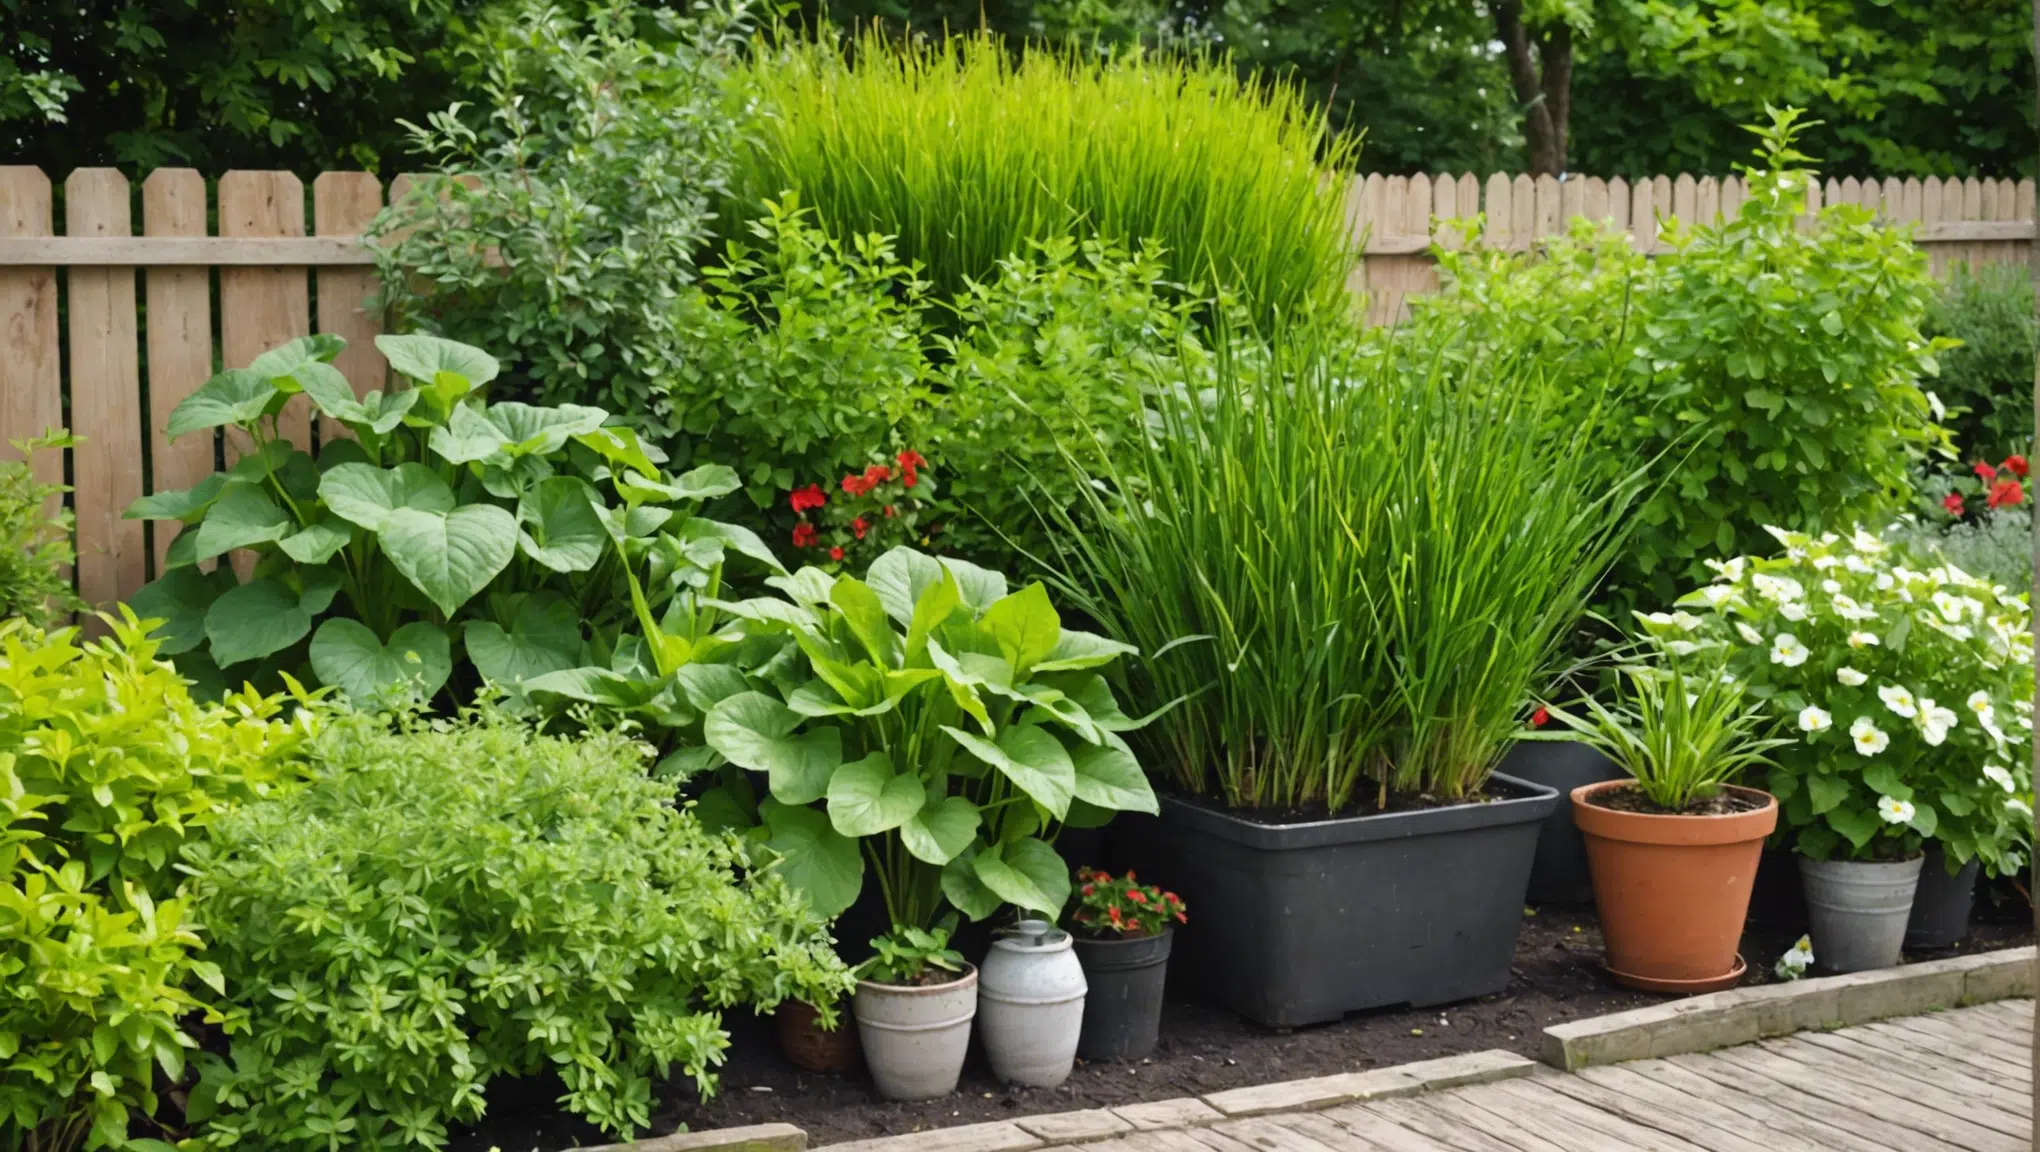 découvrez des astuces incroyables pour rendre le jardinage simple et naturel. vous serez surpris par leur efficacité !